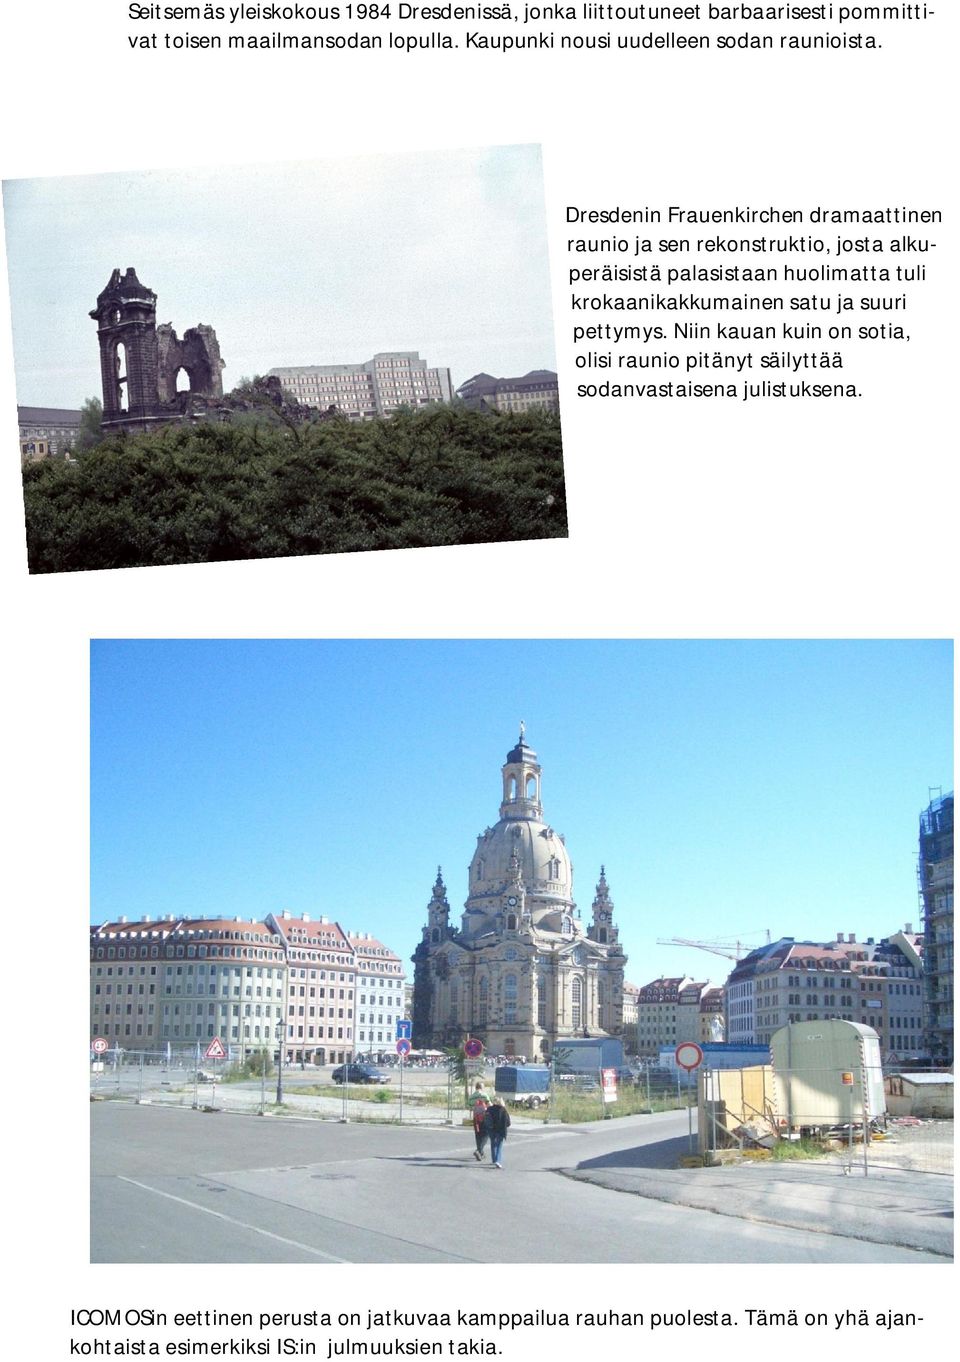 Dresdenin Frauenkirchen dramaattinen raunio ja sen rekonstruktio, josta alkuperäisistä palasistaan huolimatta tuli